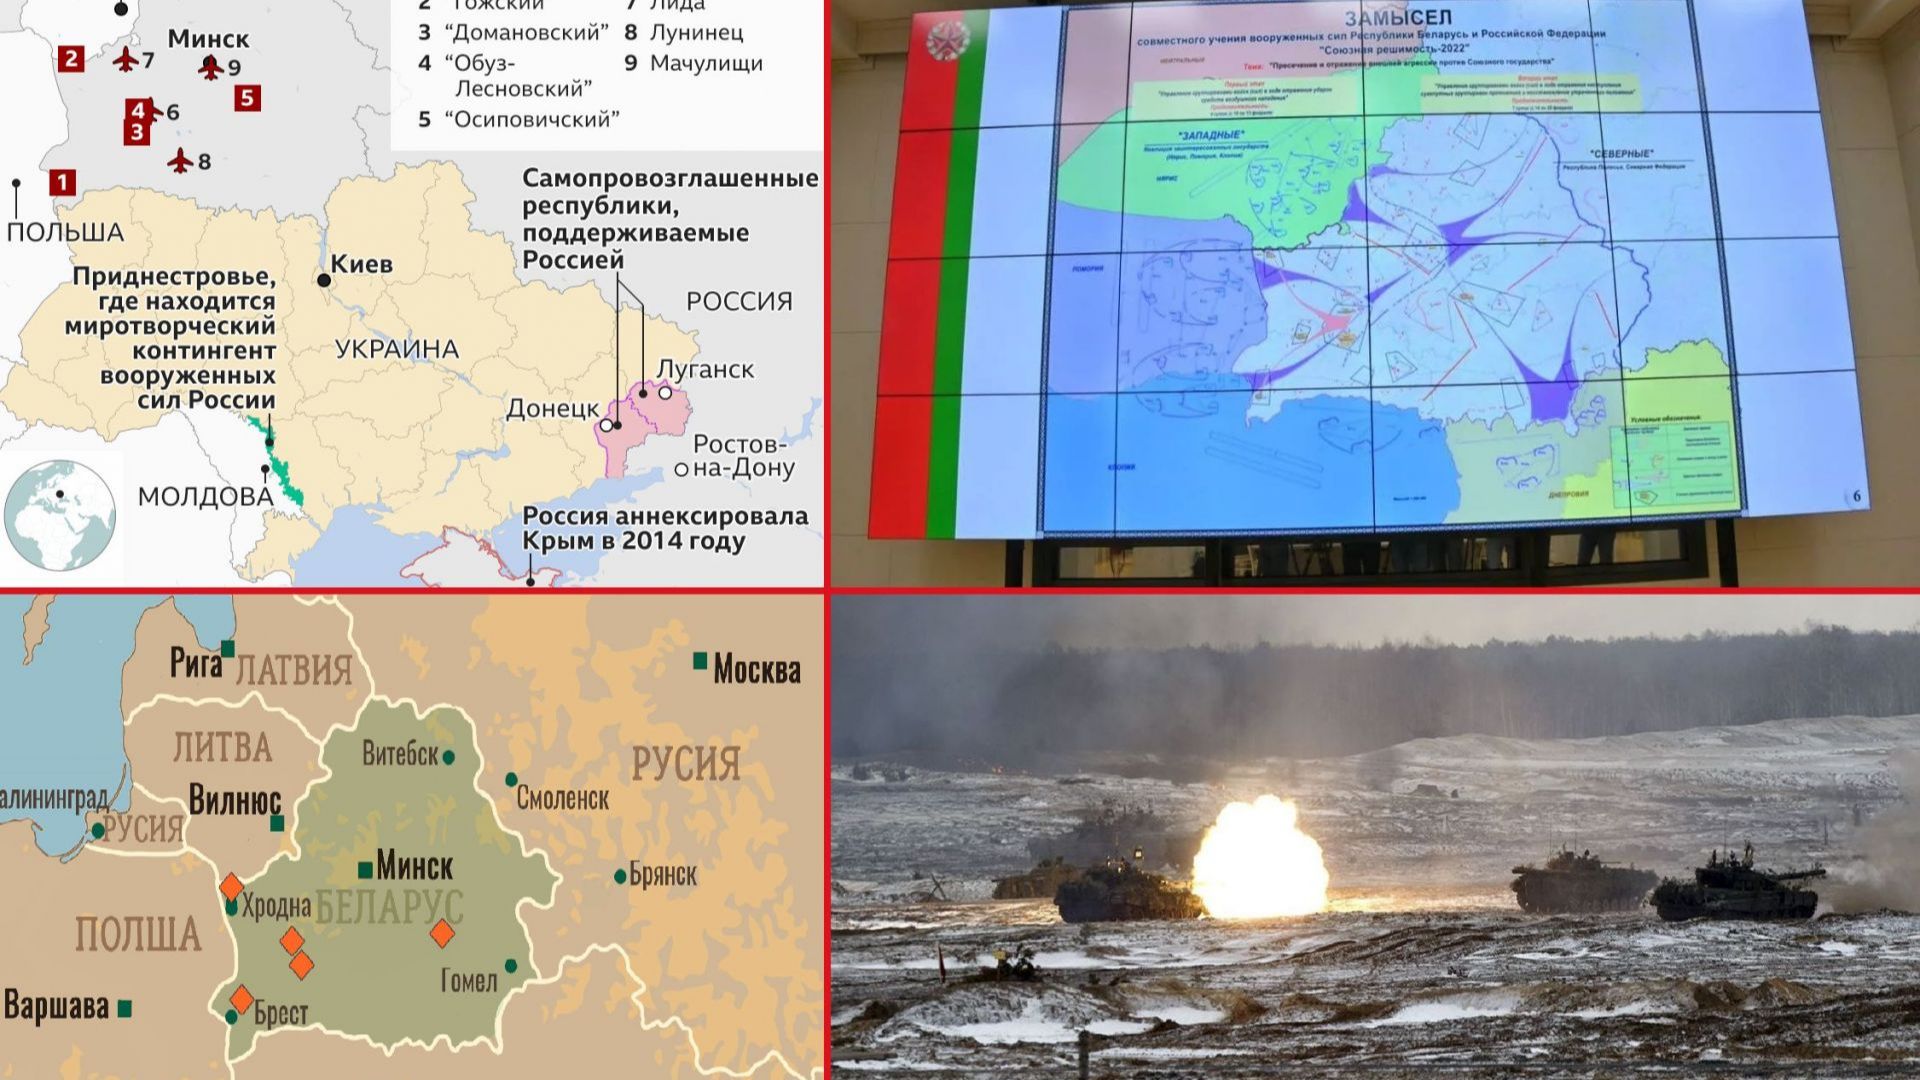 Настъпление под претекст за мироопазваща акция: Сценарият на Москва и Минск за "Съюзна решимост"